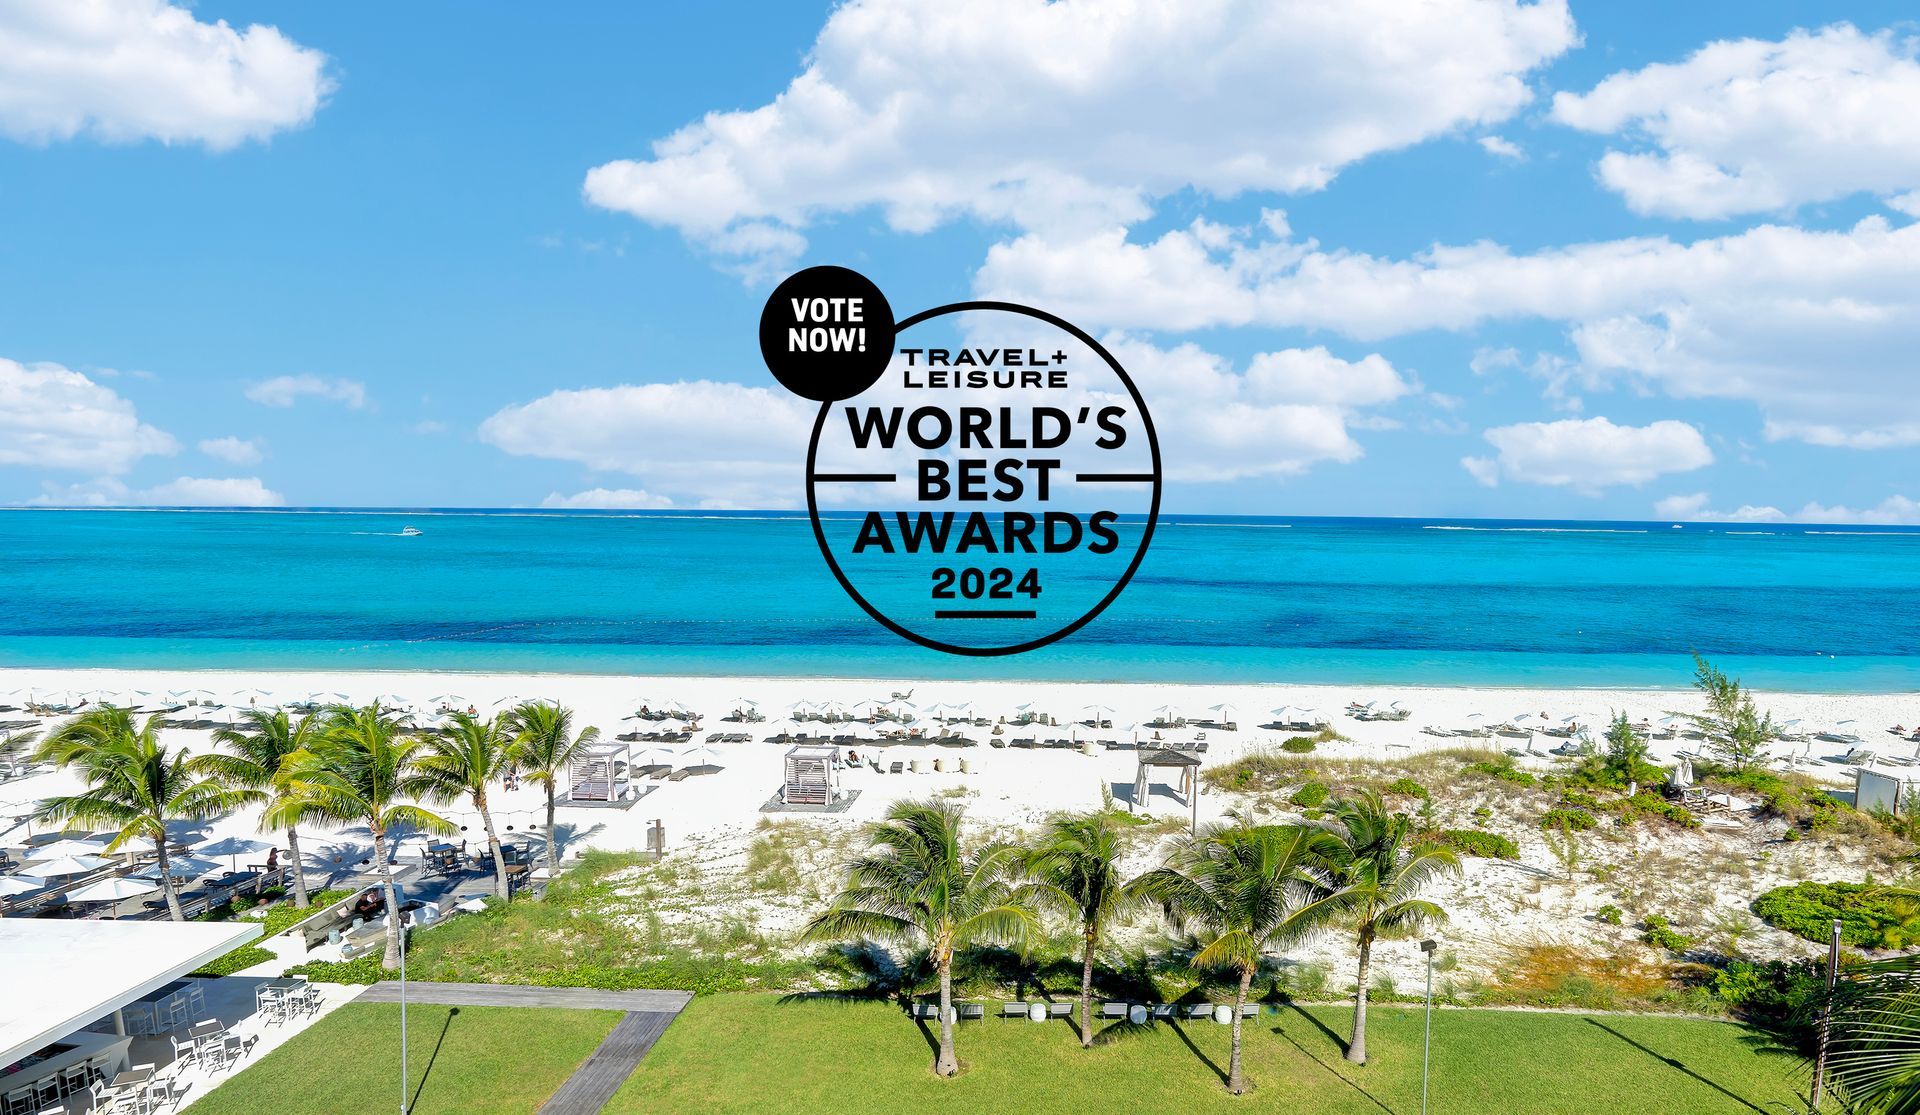 TRAVEL + LEISURE World’s Best Awards 2024  - vote for Wymara Resort + Villas